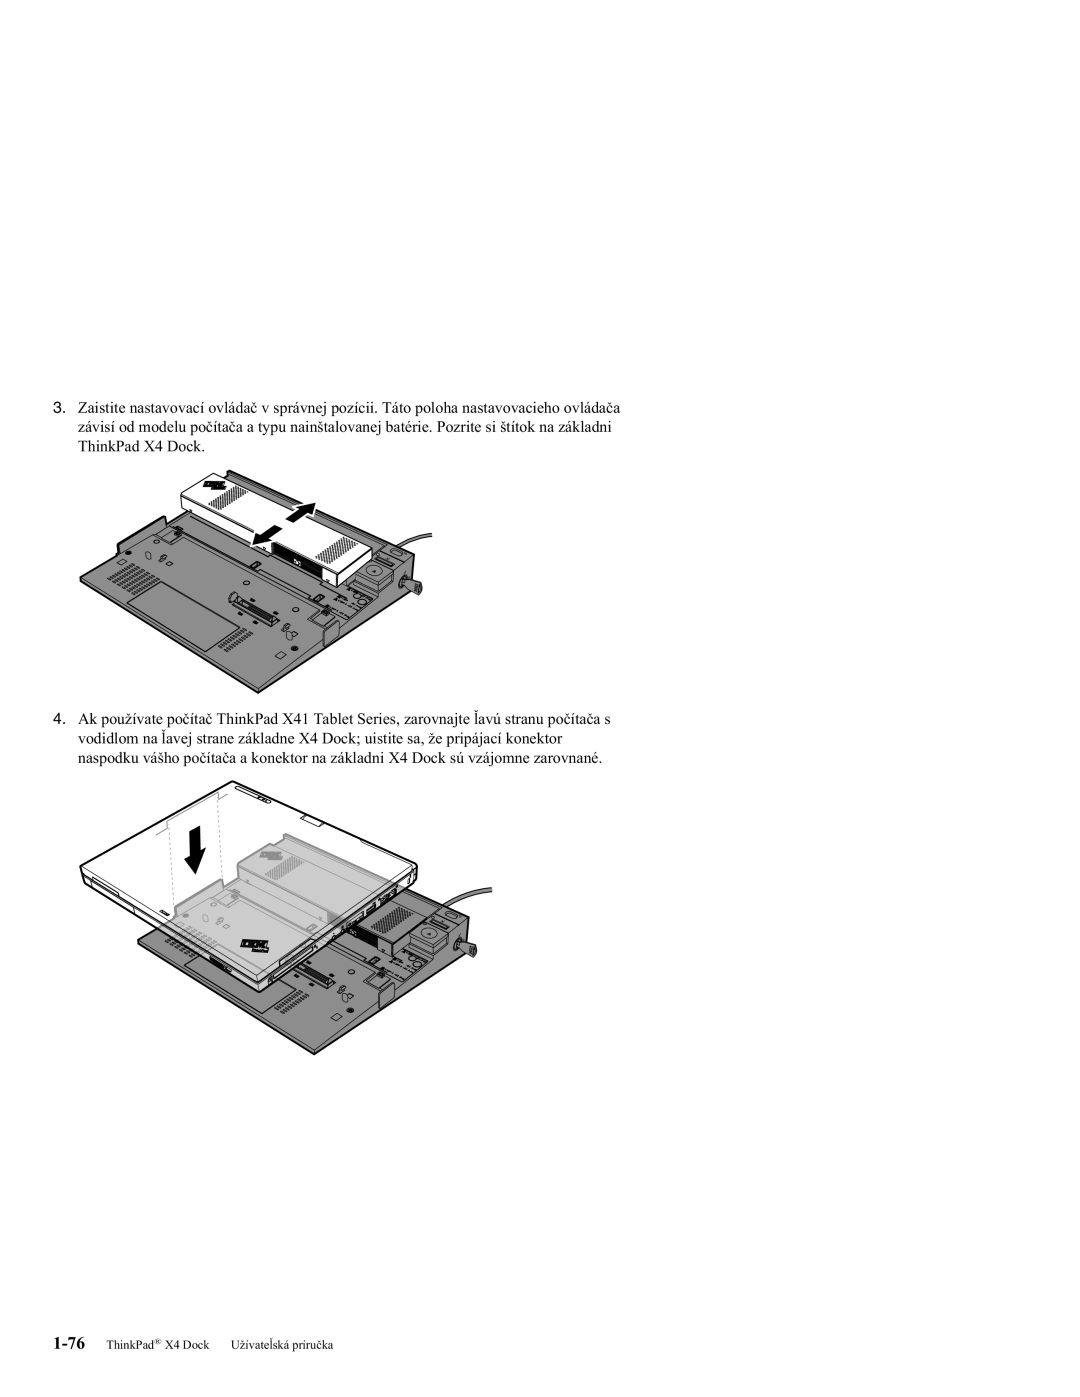 IBM manual ThinkPad X4 Dock Užívateľská príručka 